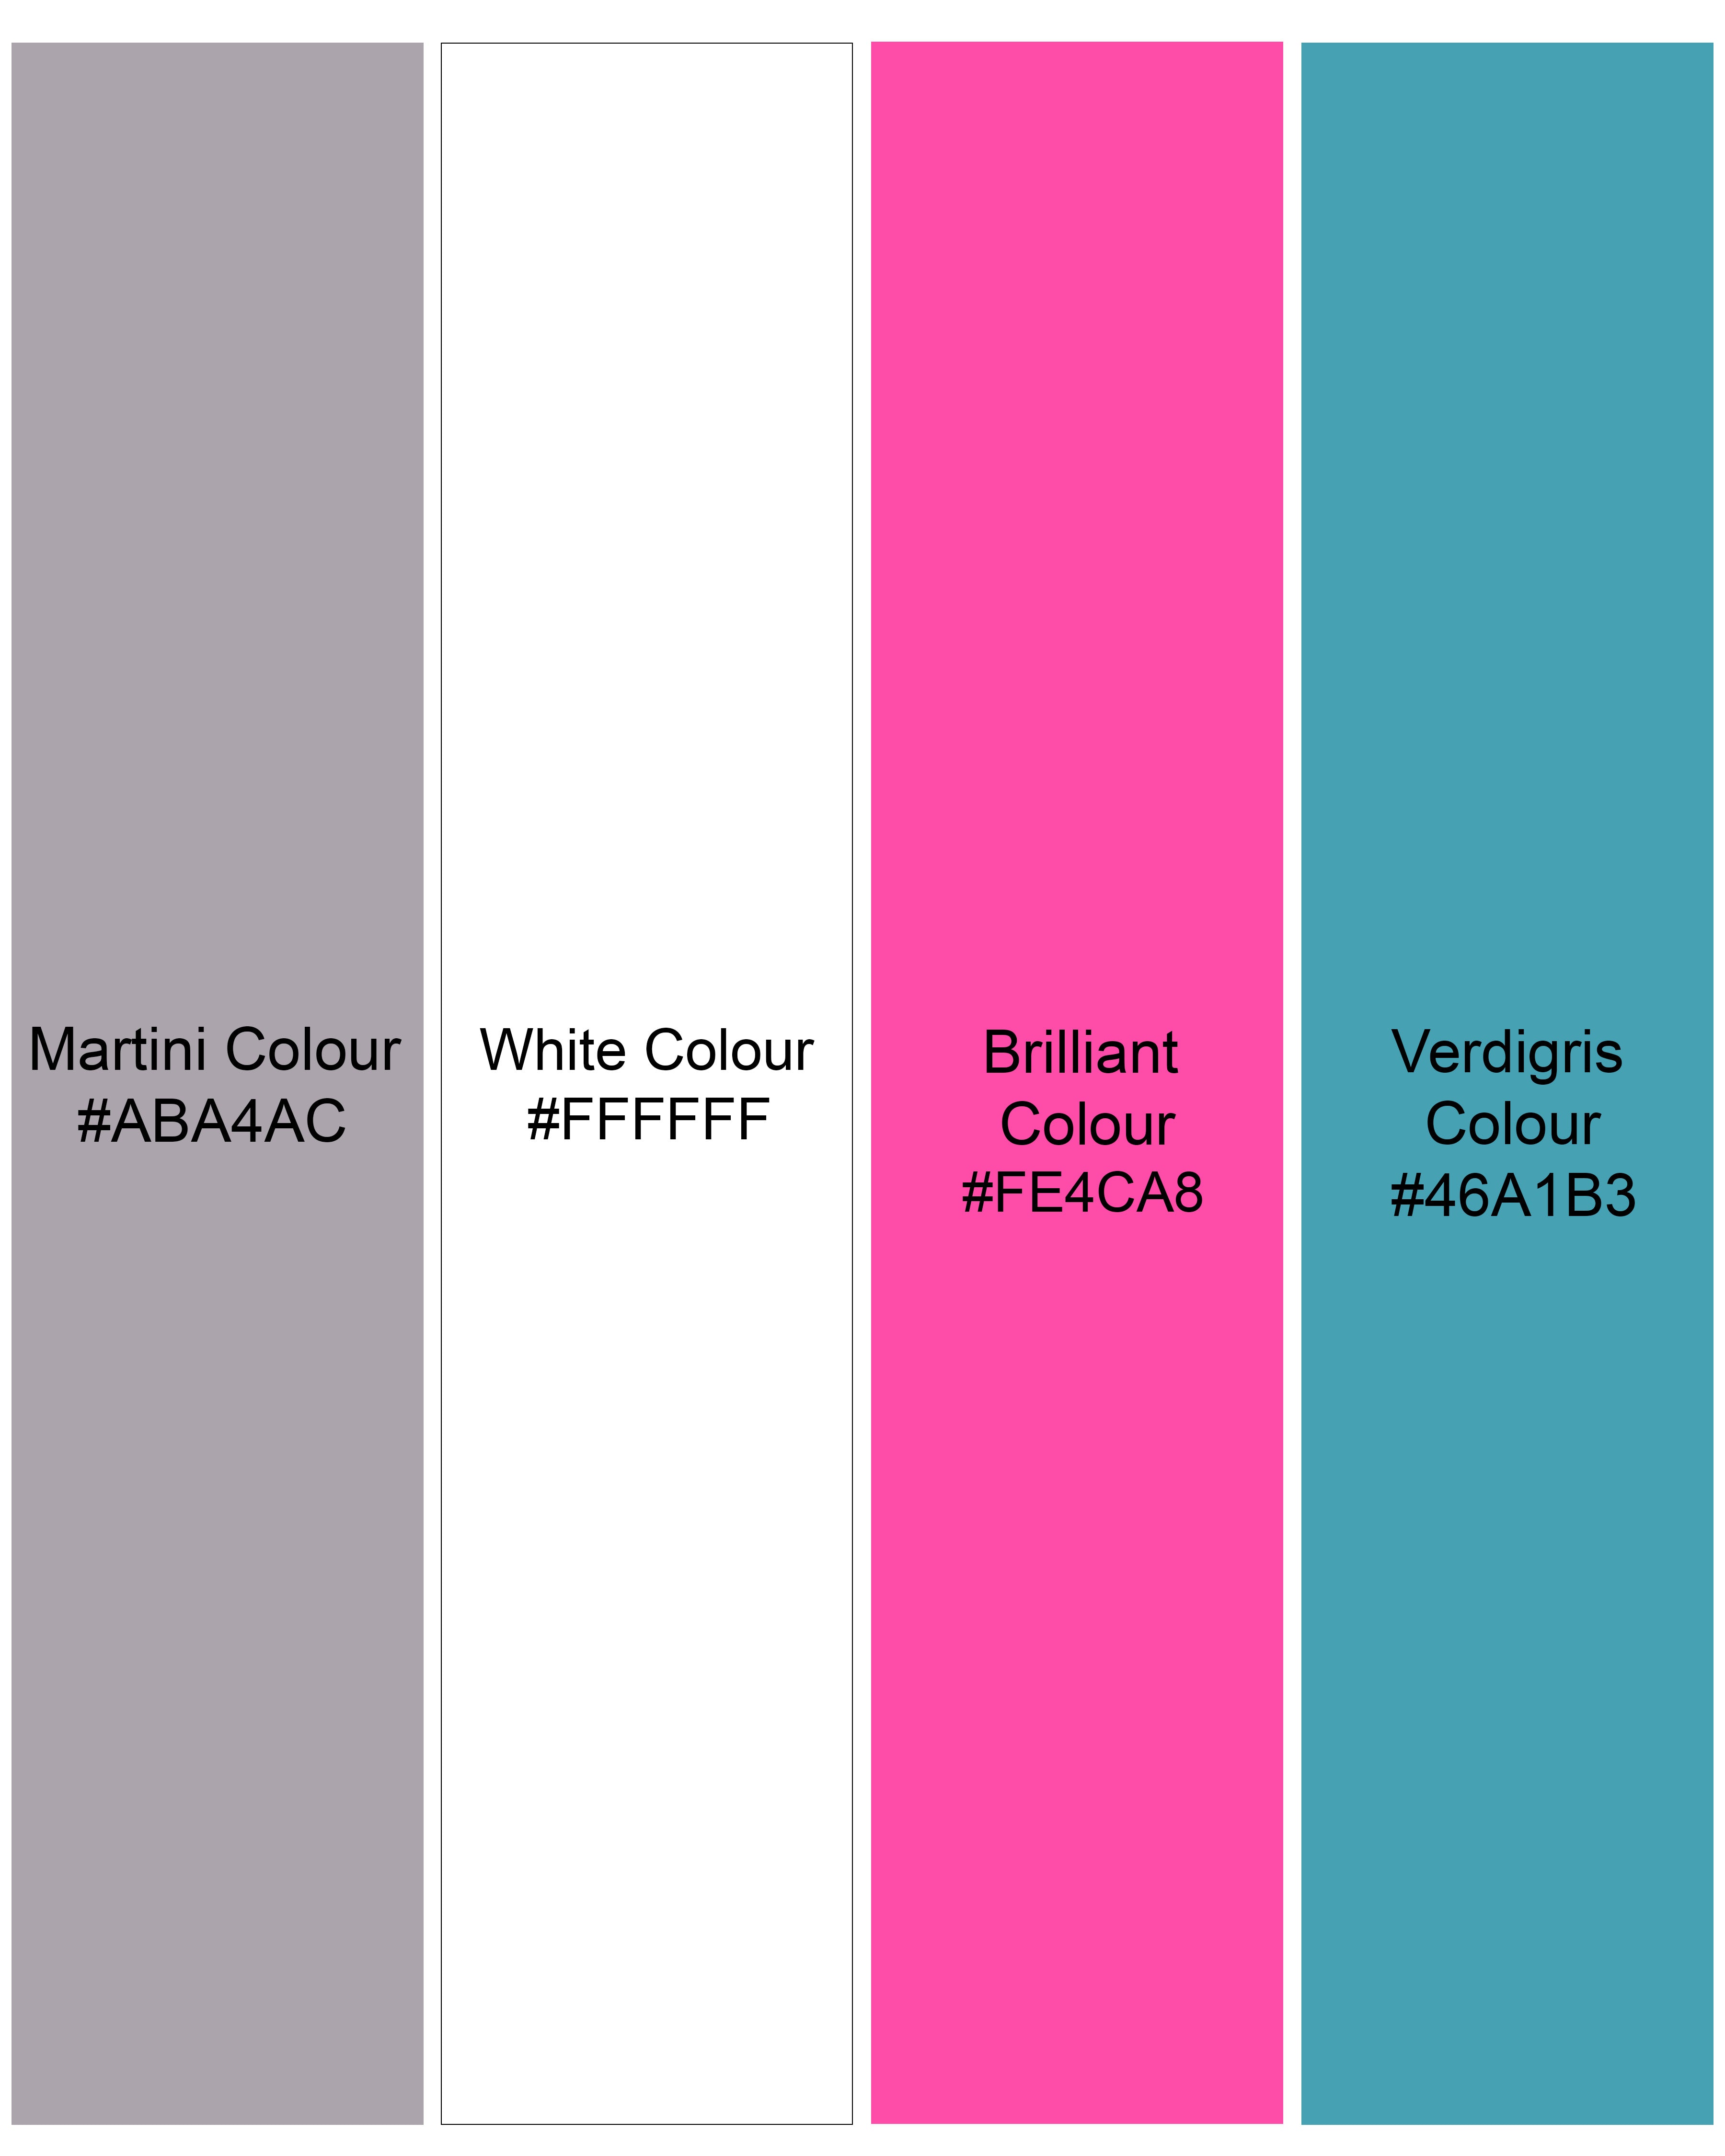 Martini Gray with White Printed Premium Cotton Boxers BX441-28, BX441-30, BX441-32, BX441-34, BX441-36, BX441-38, BX441-40, BX441-42, BX441-44